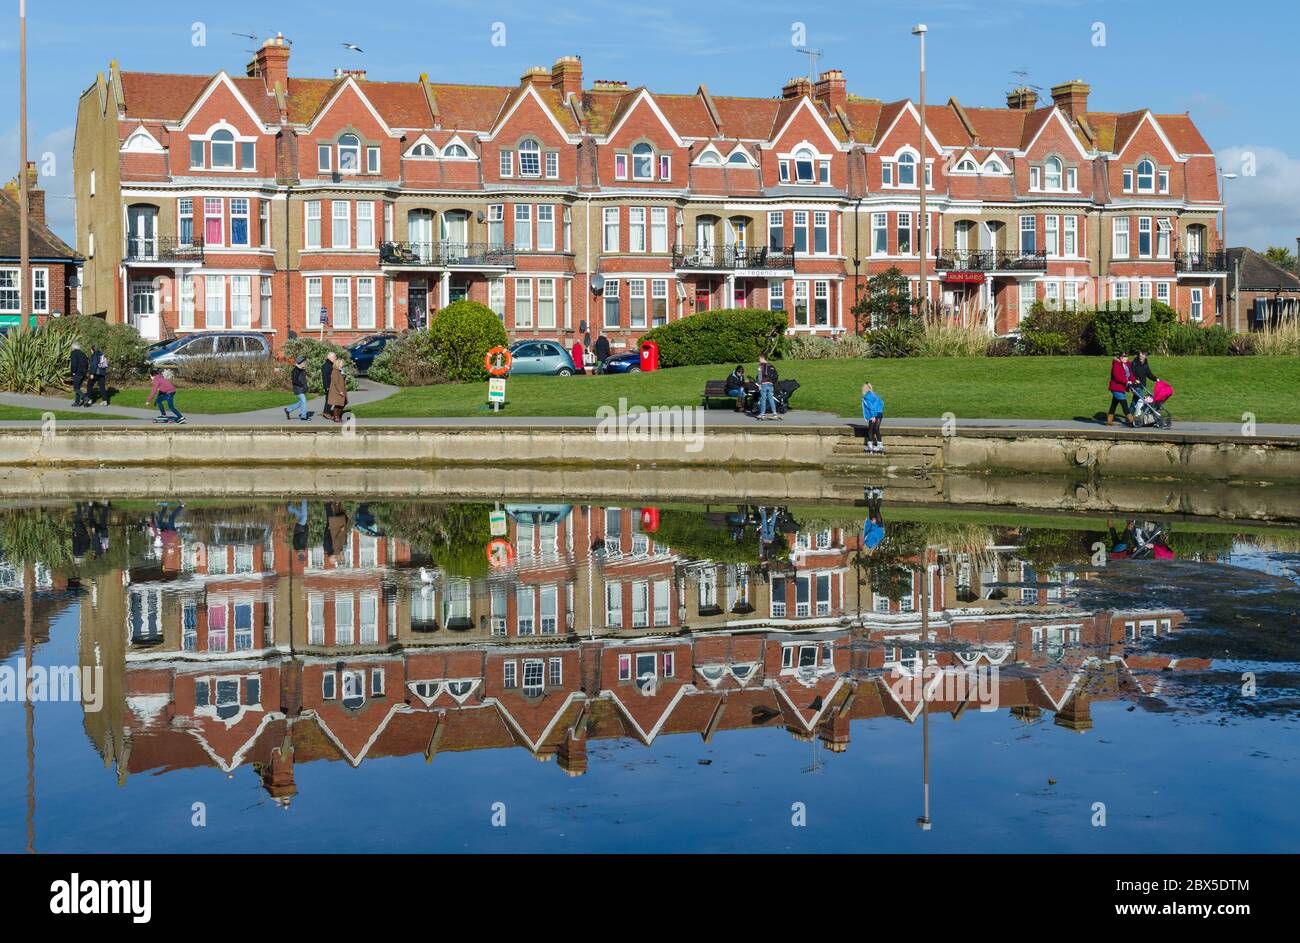 Viktorianische Reihenhäuser mit Spiegelungen in See in Littlehampton, West Sussex, England, Großbritannien. Viktorianisches Gehäuse Großbritannien. Stockfoto